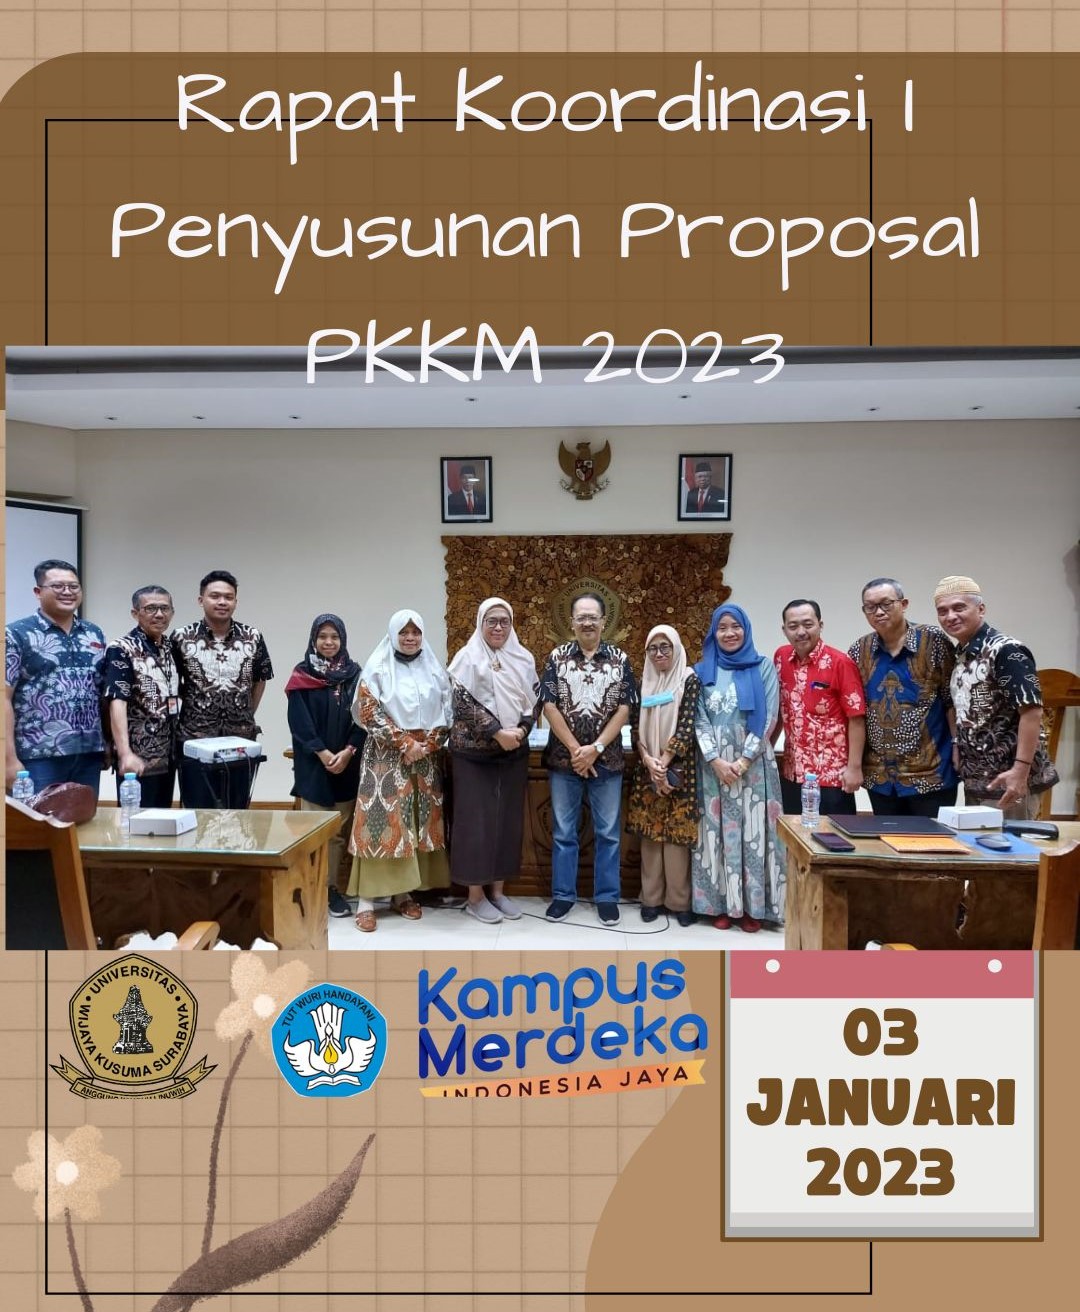 Rapat Koordinasi I Penyusunan Proposal PKKM 2023